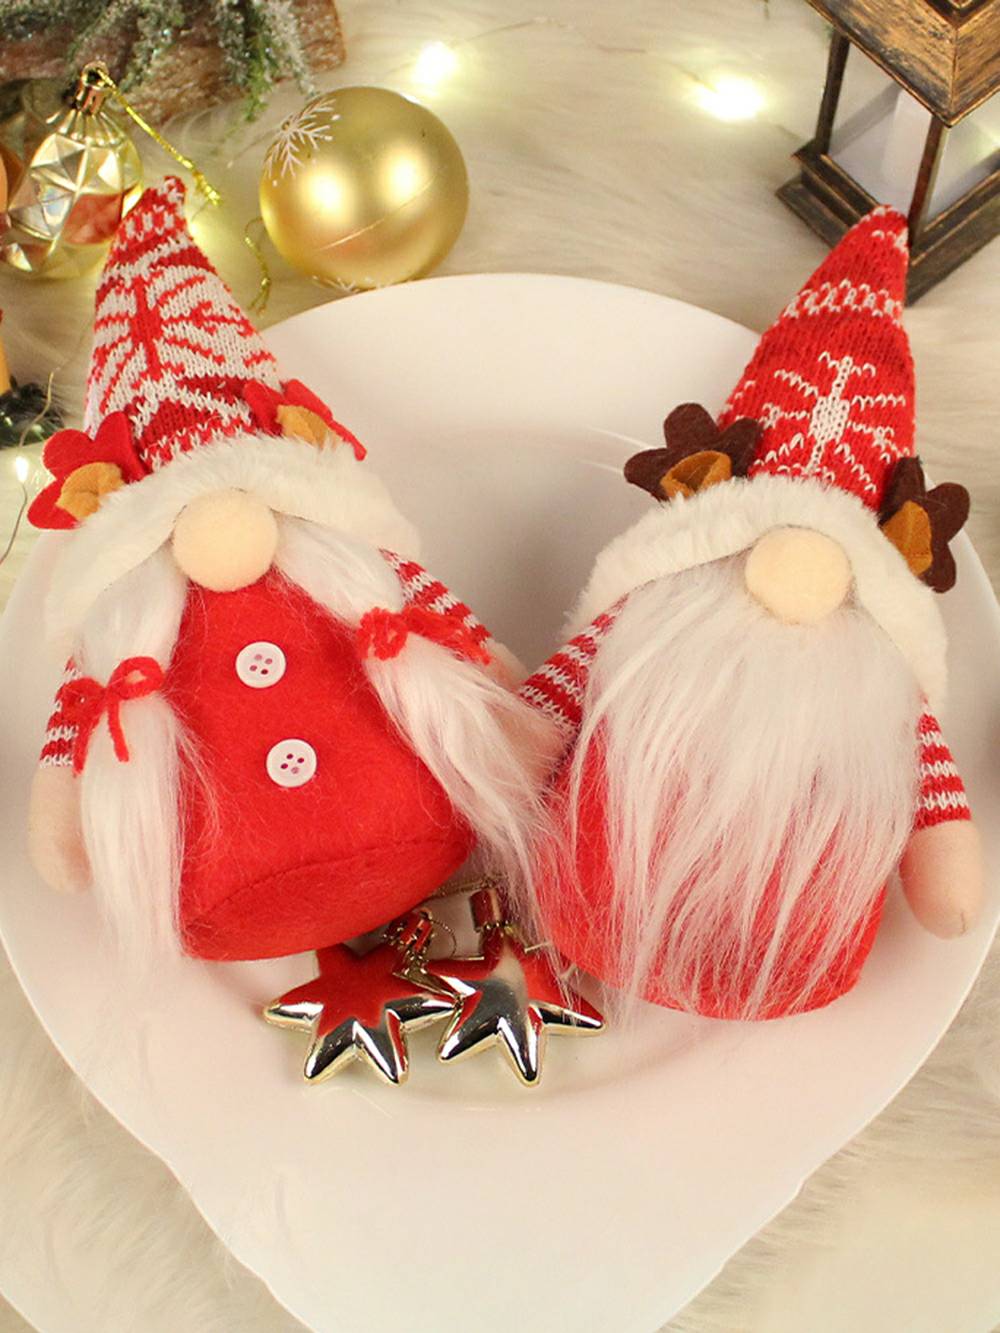 Decorazione natalizia da elfo in peluche: coppia di bambole intrecciate e barbute con corna